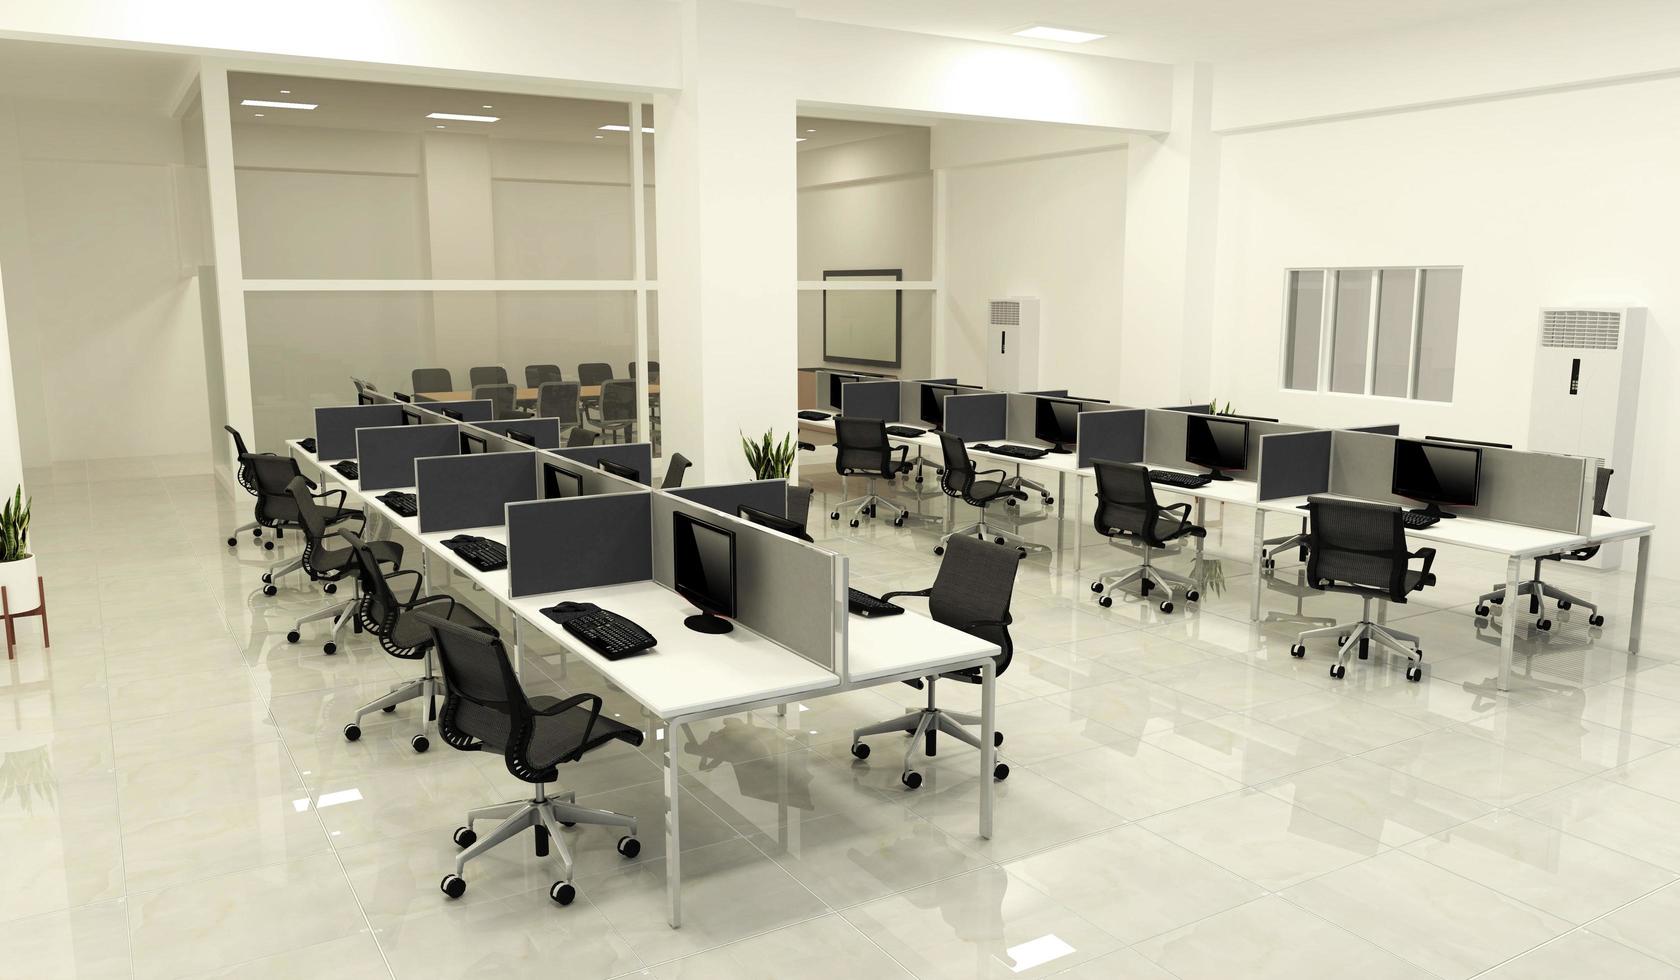 ufficio affari - bella grande stanza ufficio e tavolo da conferenza, in stile moderno. rendering 3d foto